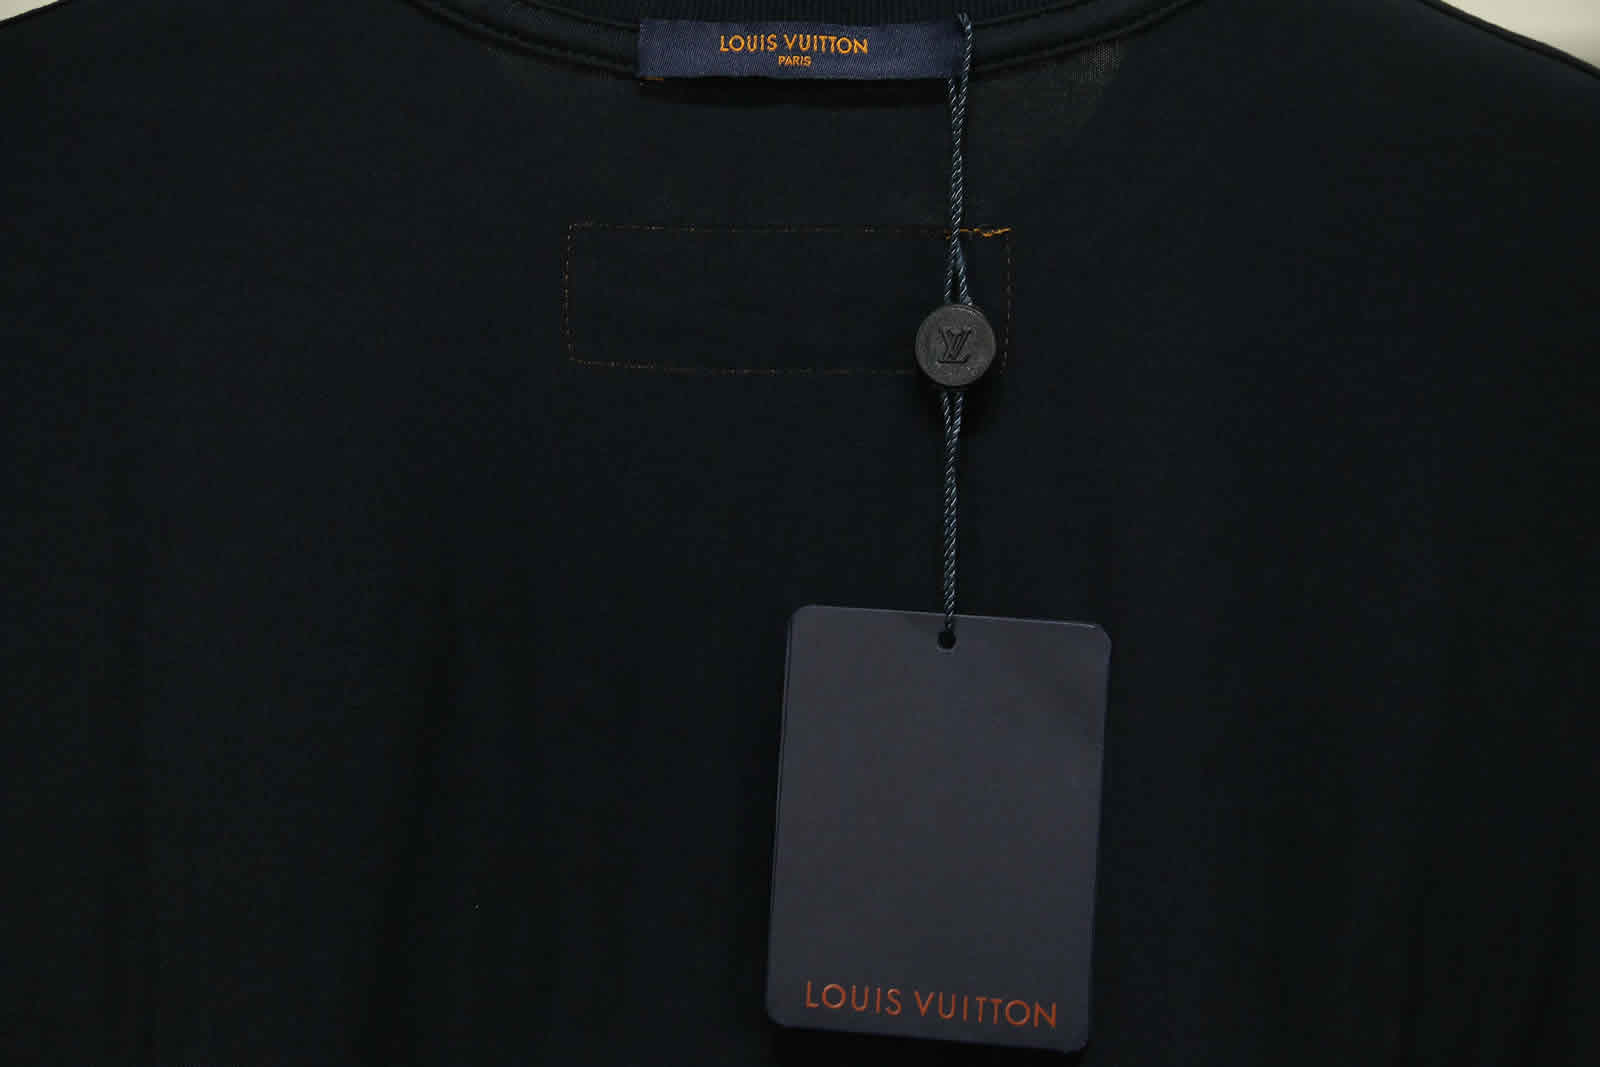 Louis Vuitton Catwalk T Shirt 2021 17 - kickbulk.org